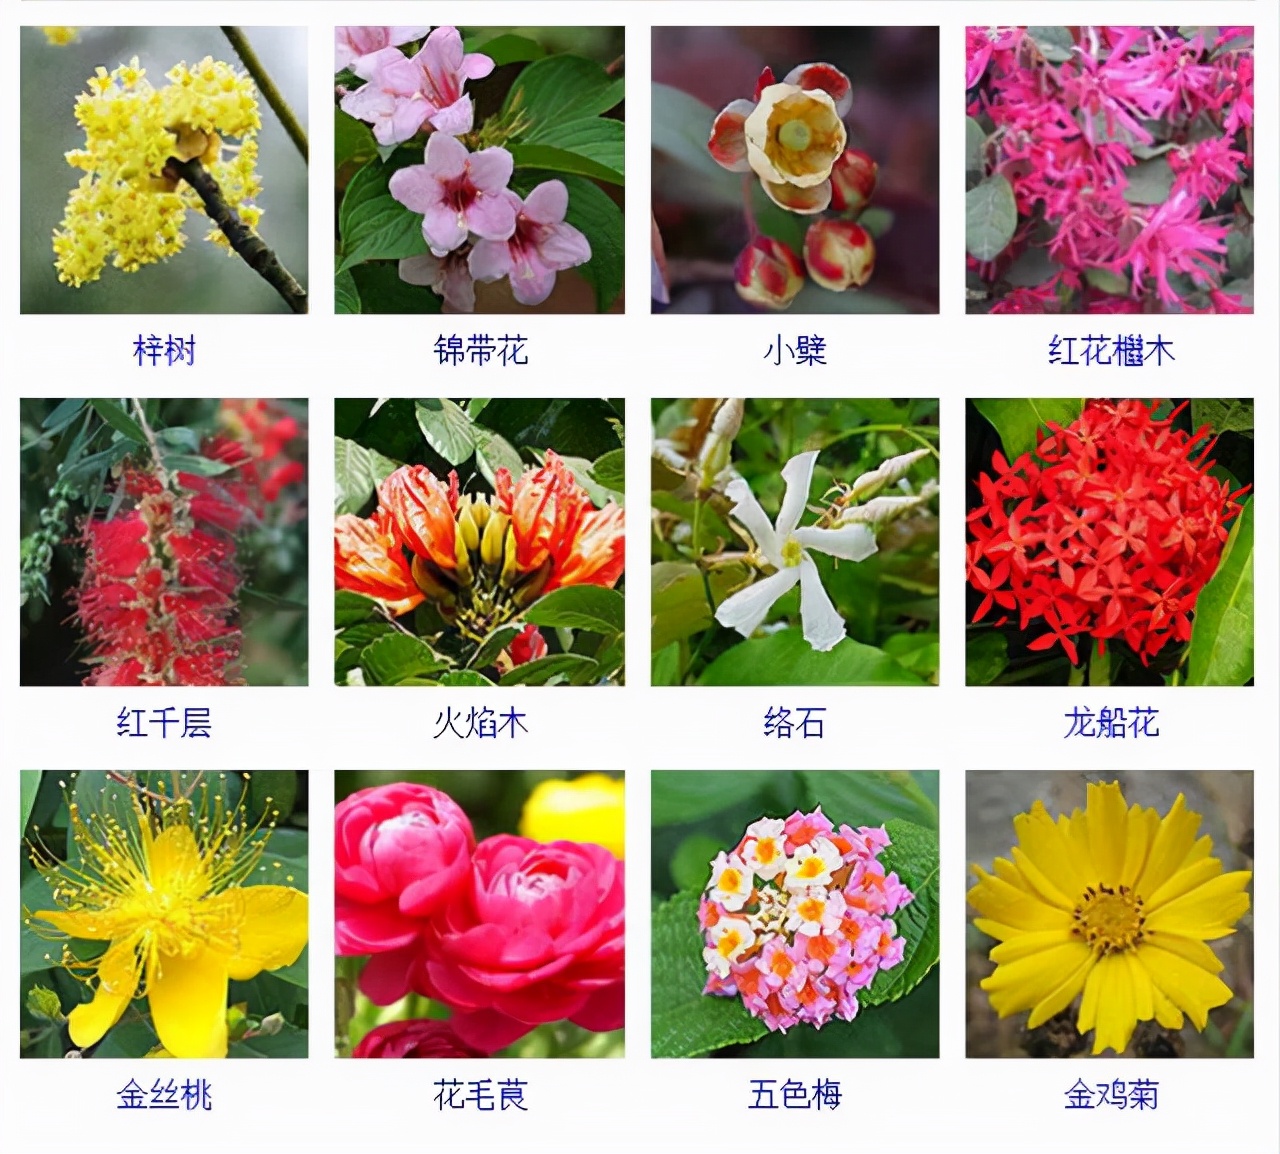 所有植物的名字图片